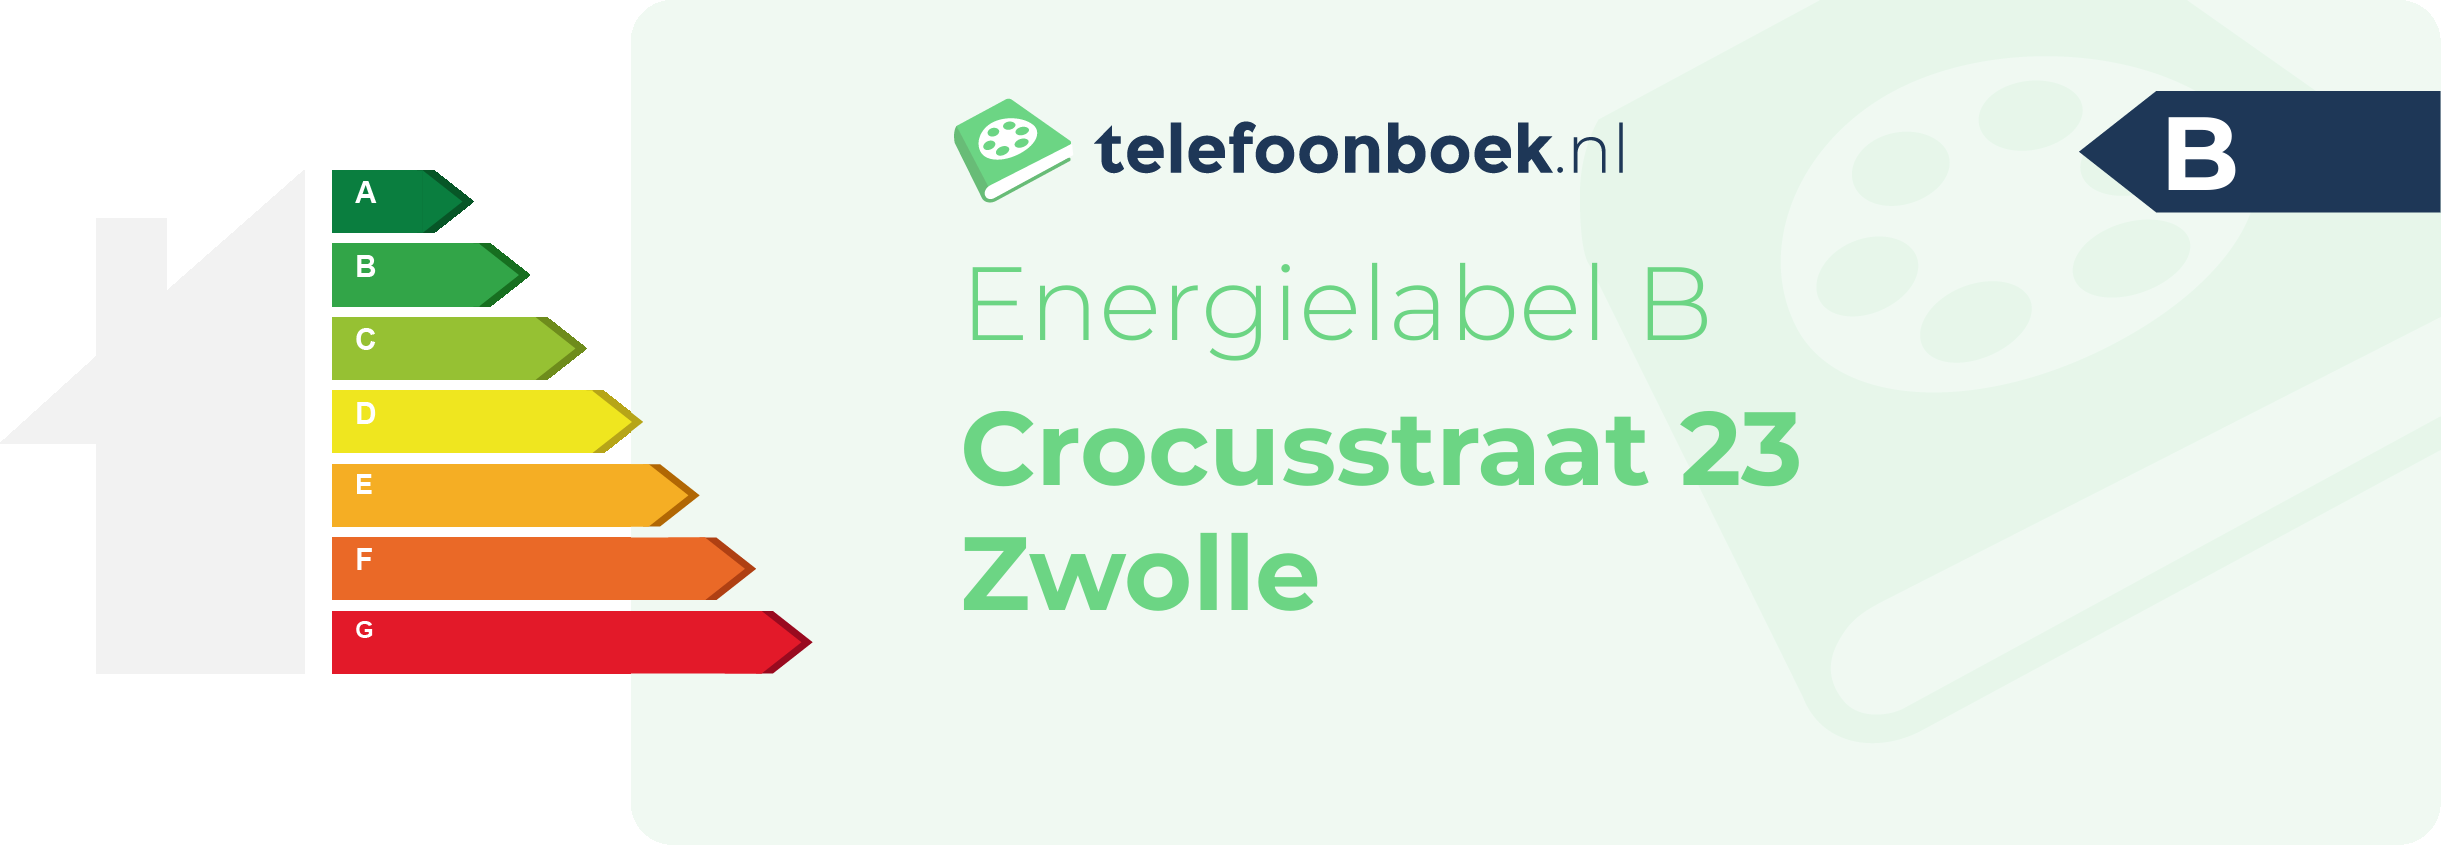 Energielabel Crocusstraat 23 Zwolle